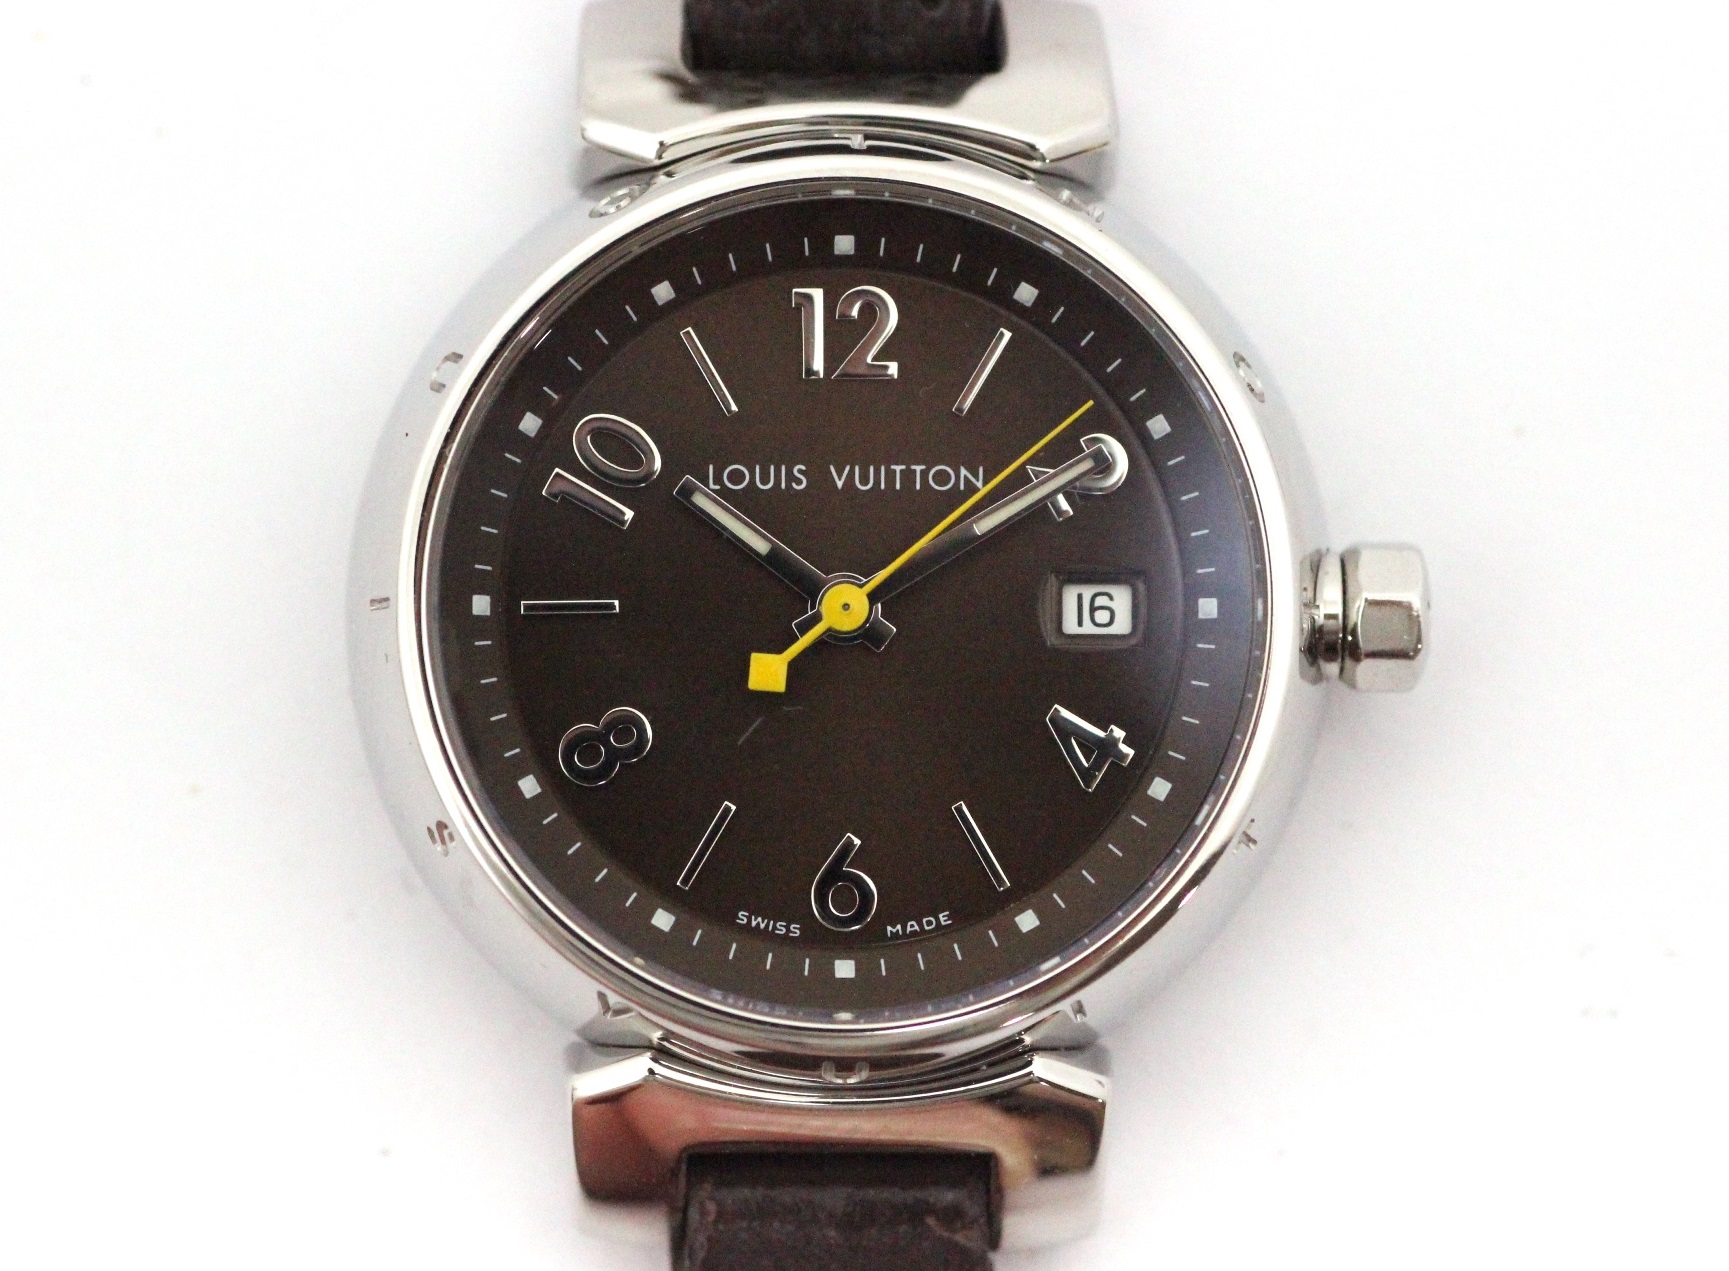 LOUIS VUITTON ルイ・ヴィトン 腕時計 タンブール Q1211 ブラウン文字盤 ステンレス/レザー クオーツ【472】SJ